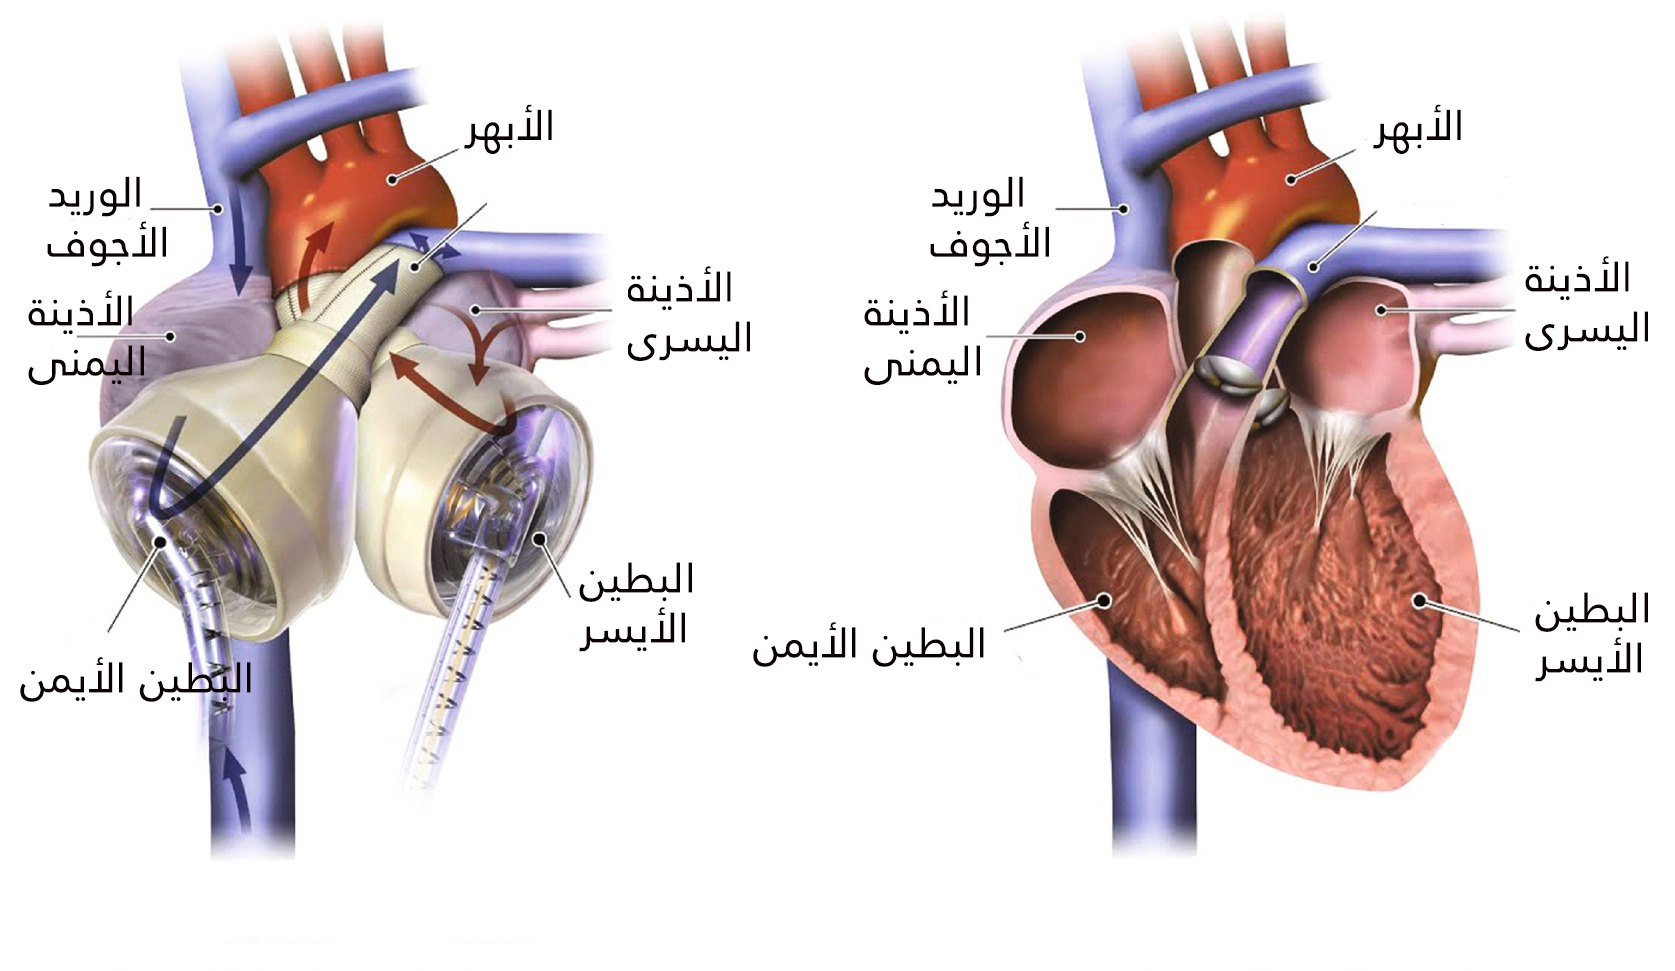 يحتوي القلب الصناعي على حجرتين تقابلان البطينين الأيمن والأيسر